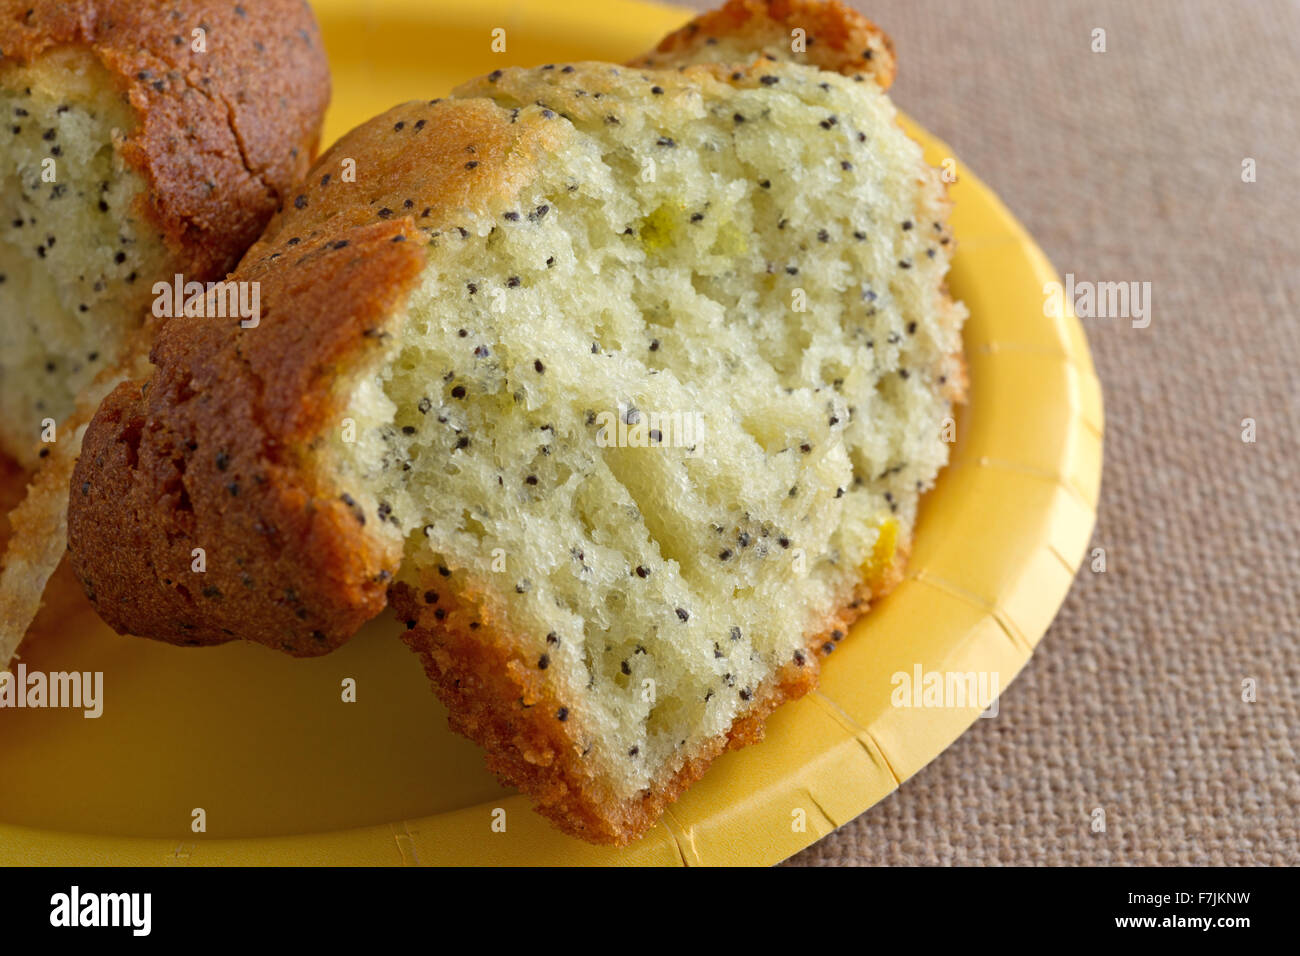 Chiudere la vista di un pane appena sfornato di pepe al limone muffin prima colazione che è stato rotto in metà su una piastra di colore giallo Foto Stock